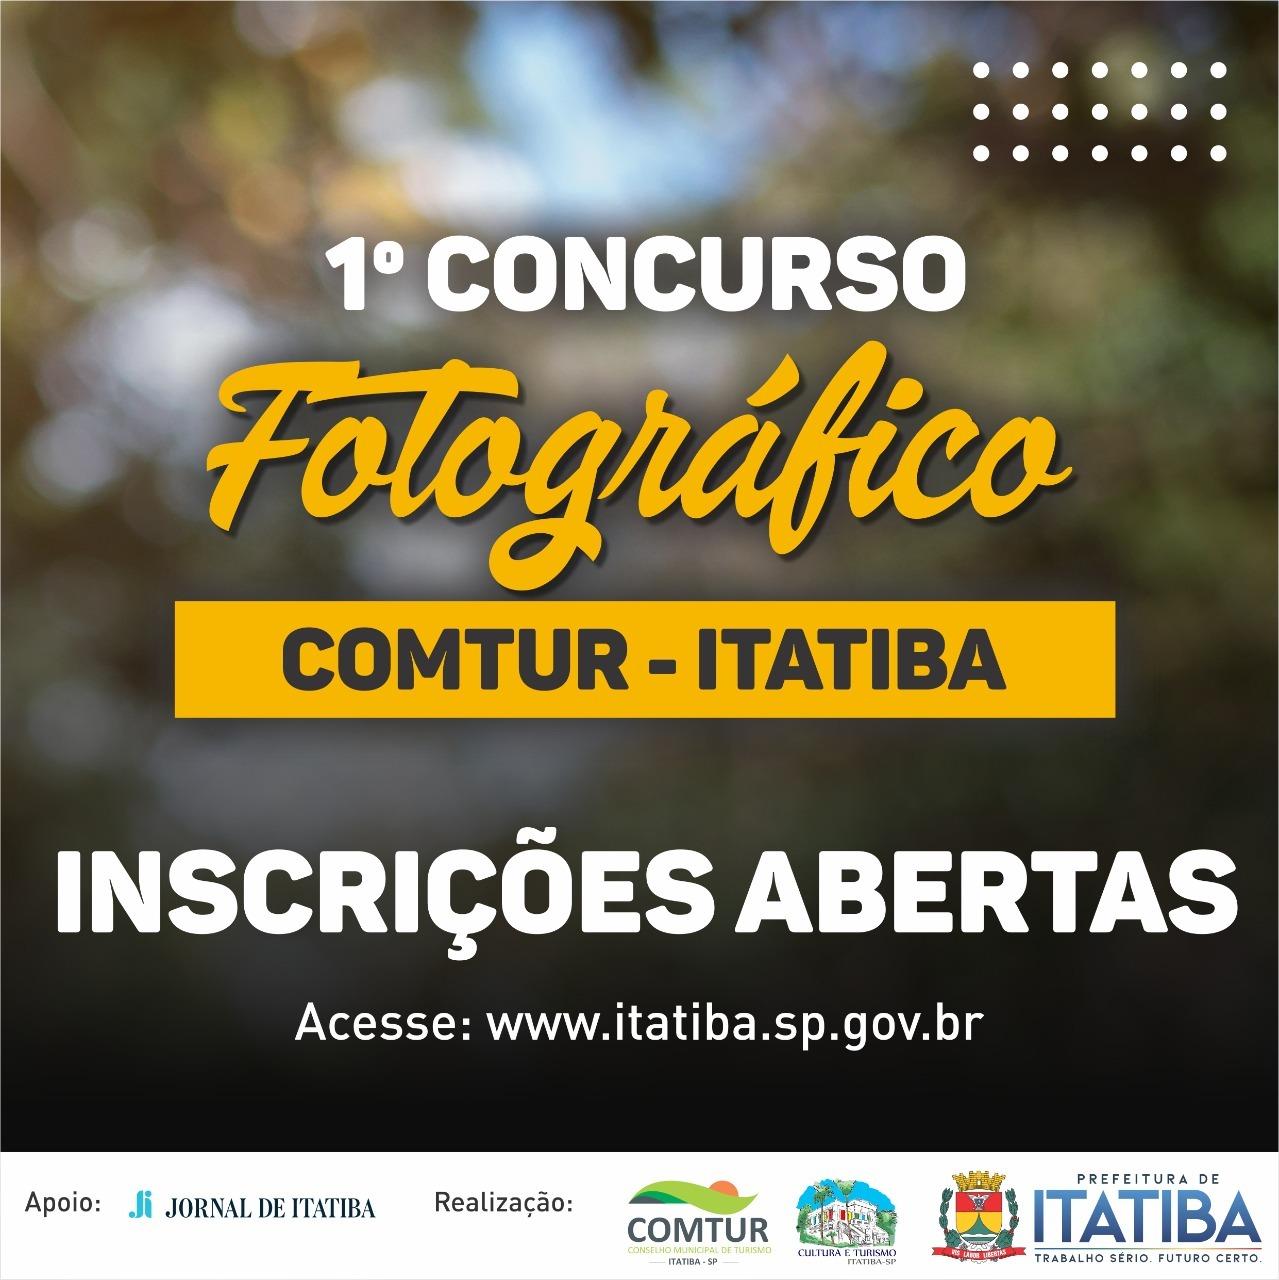  Inscrições para Concurso Fotográfico Comtur - Itatiba terminam nesta quarta (31/08)